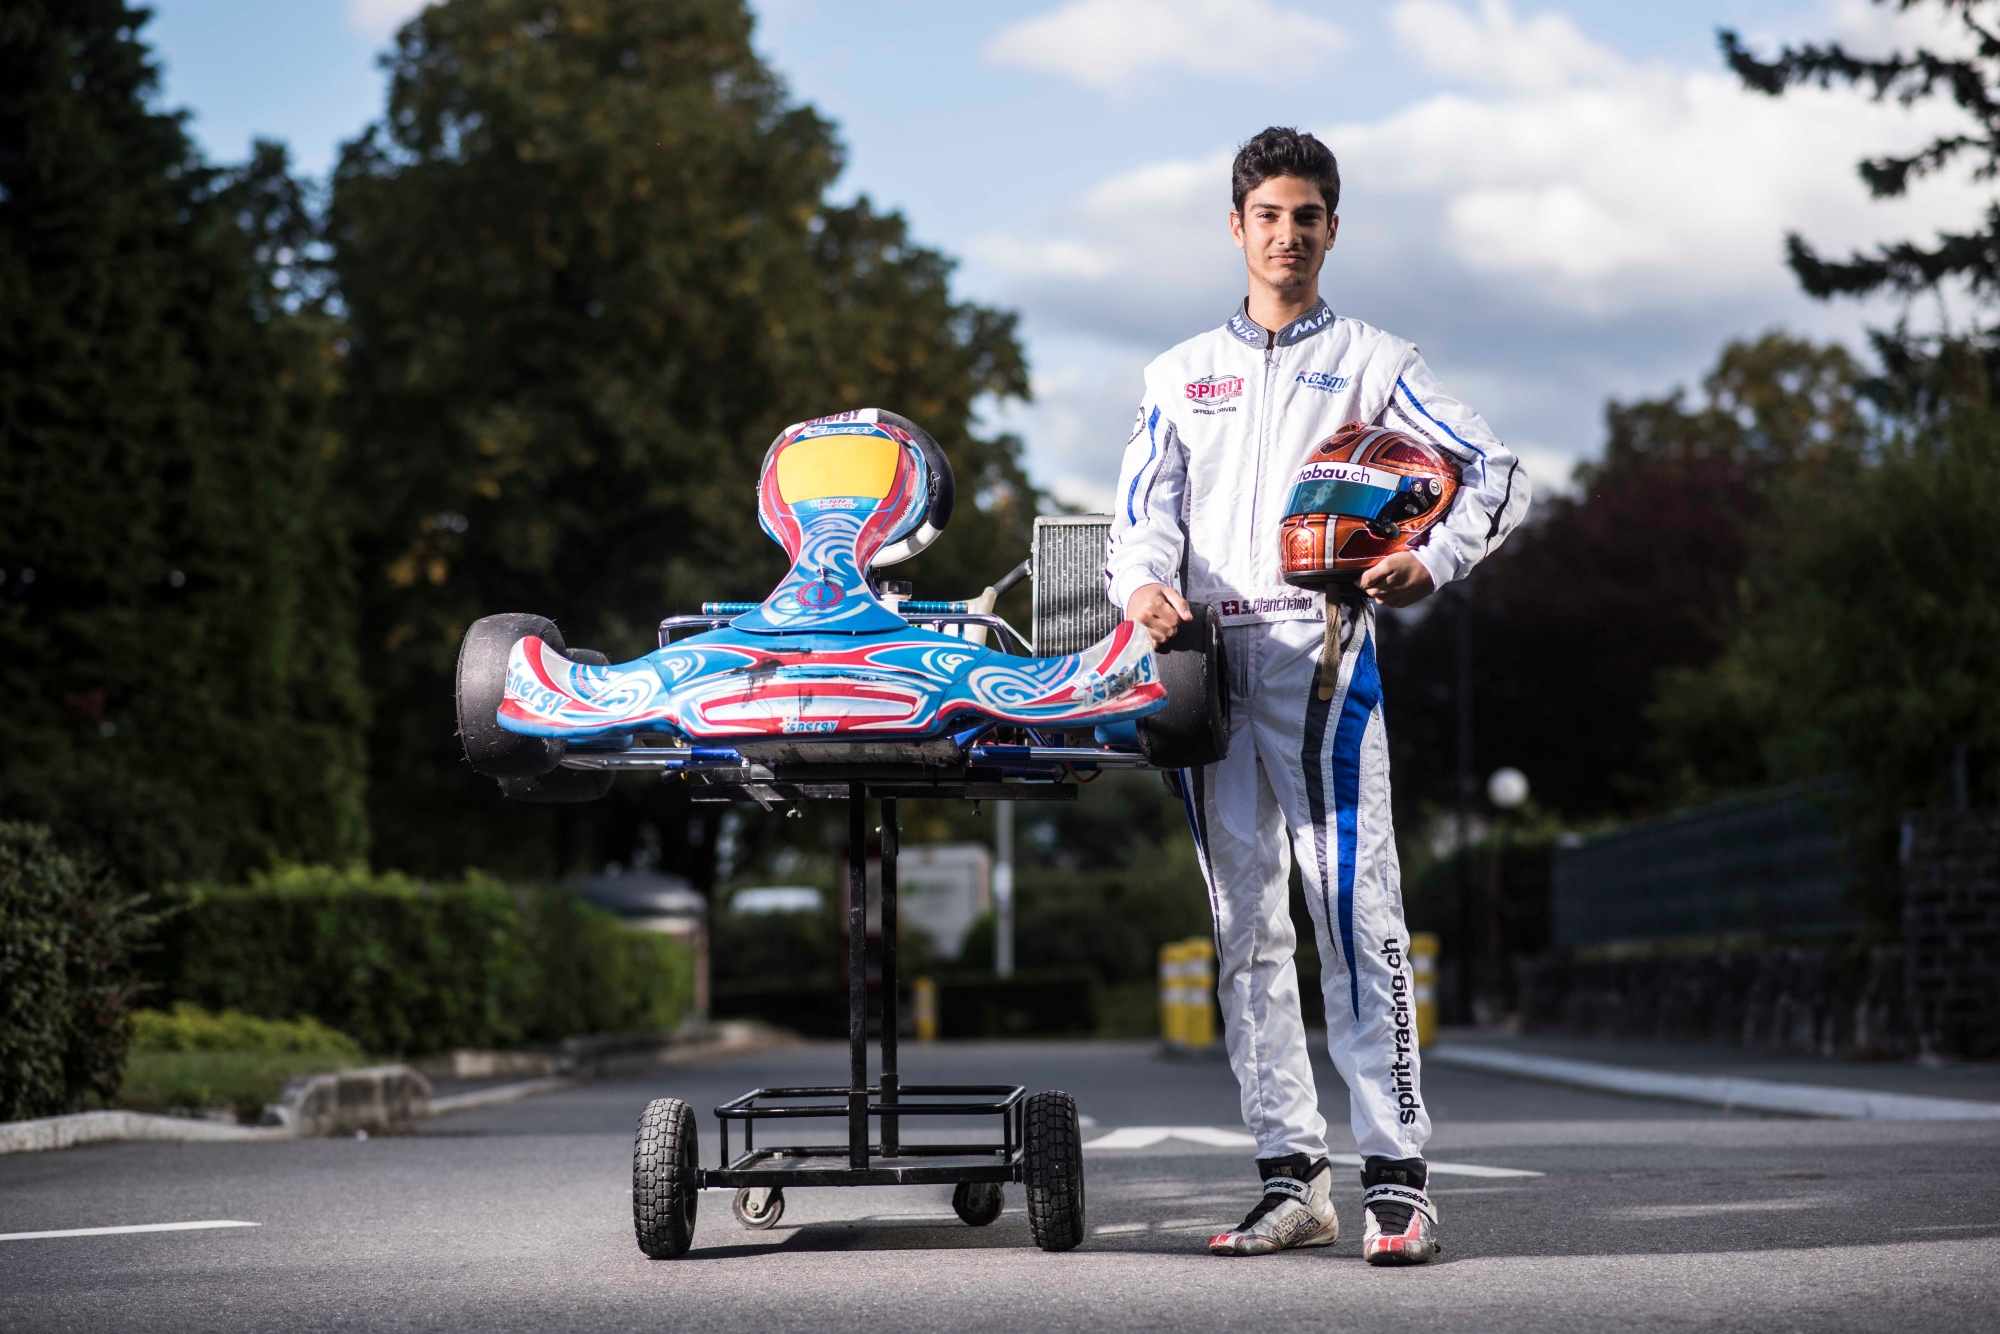 Steven Planchamp jeune espoir du karting.



Louis Dasselborne/Le Nouvelliste